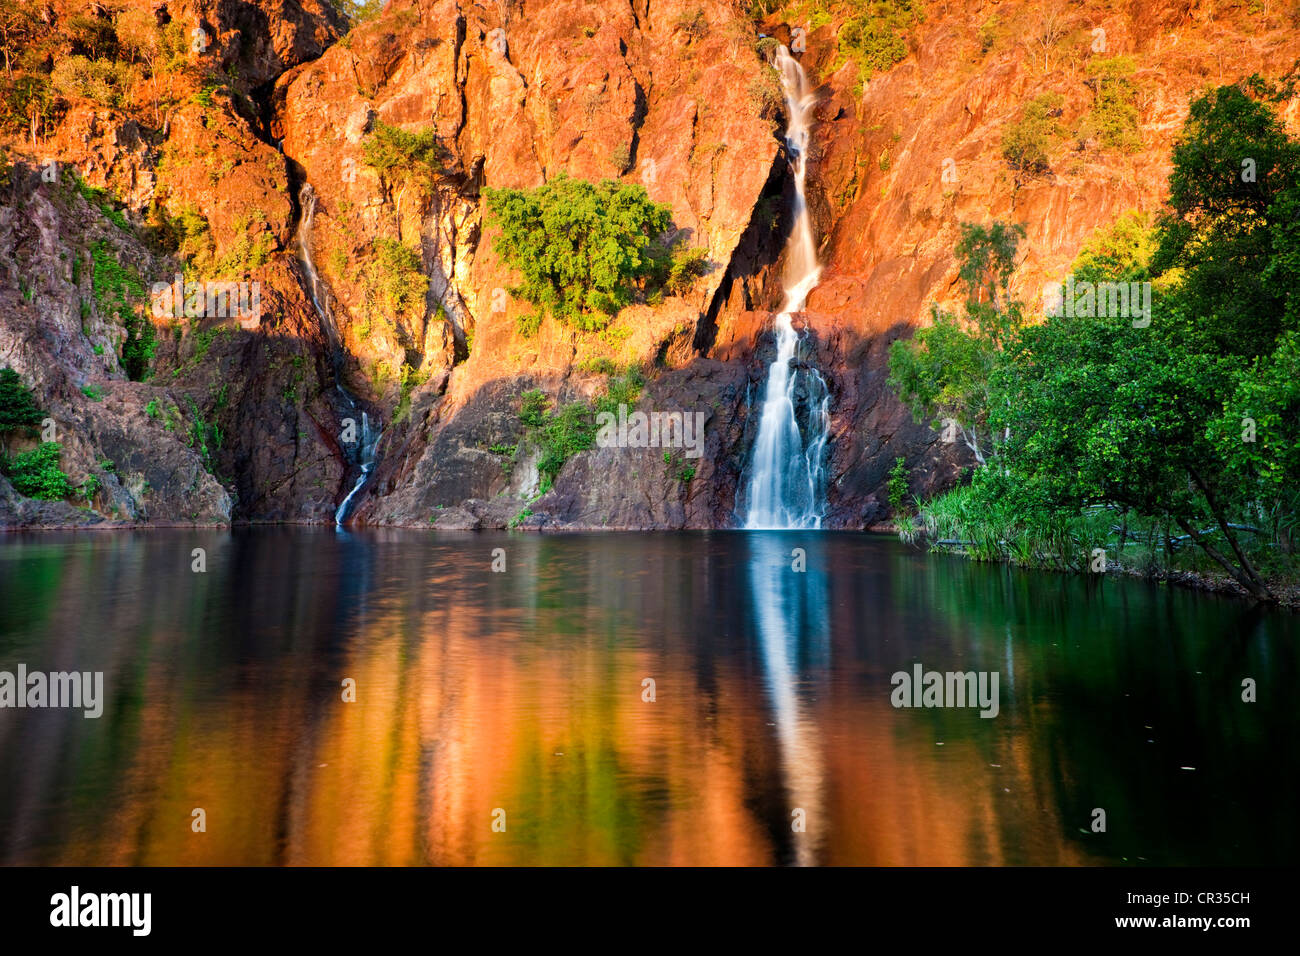 Wangi Falls at sunset, Litchfield National Park, Northern Territory, Australia Stock Photo